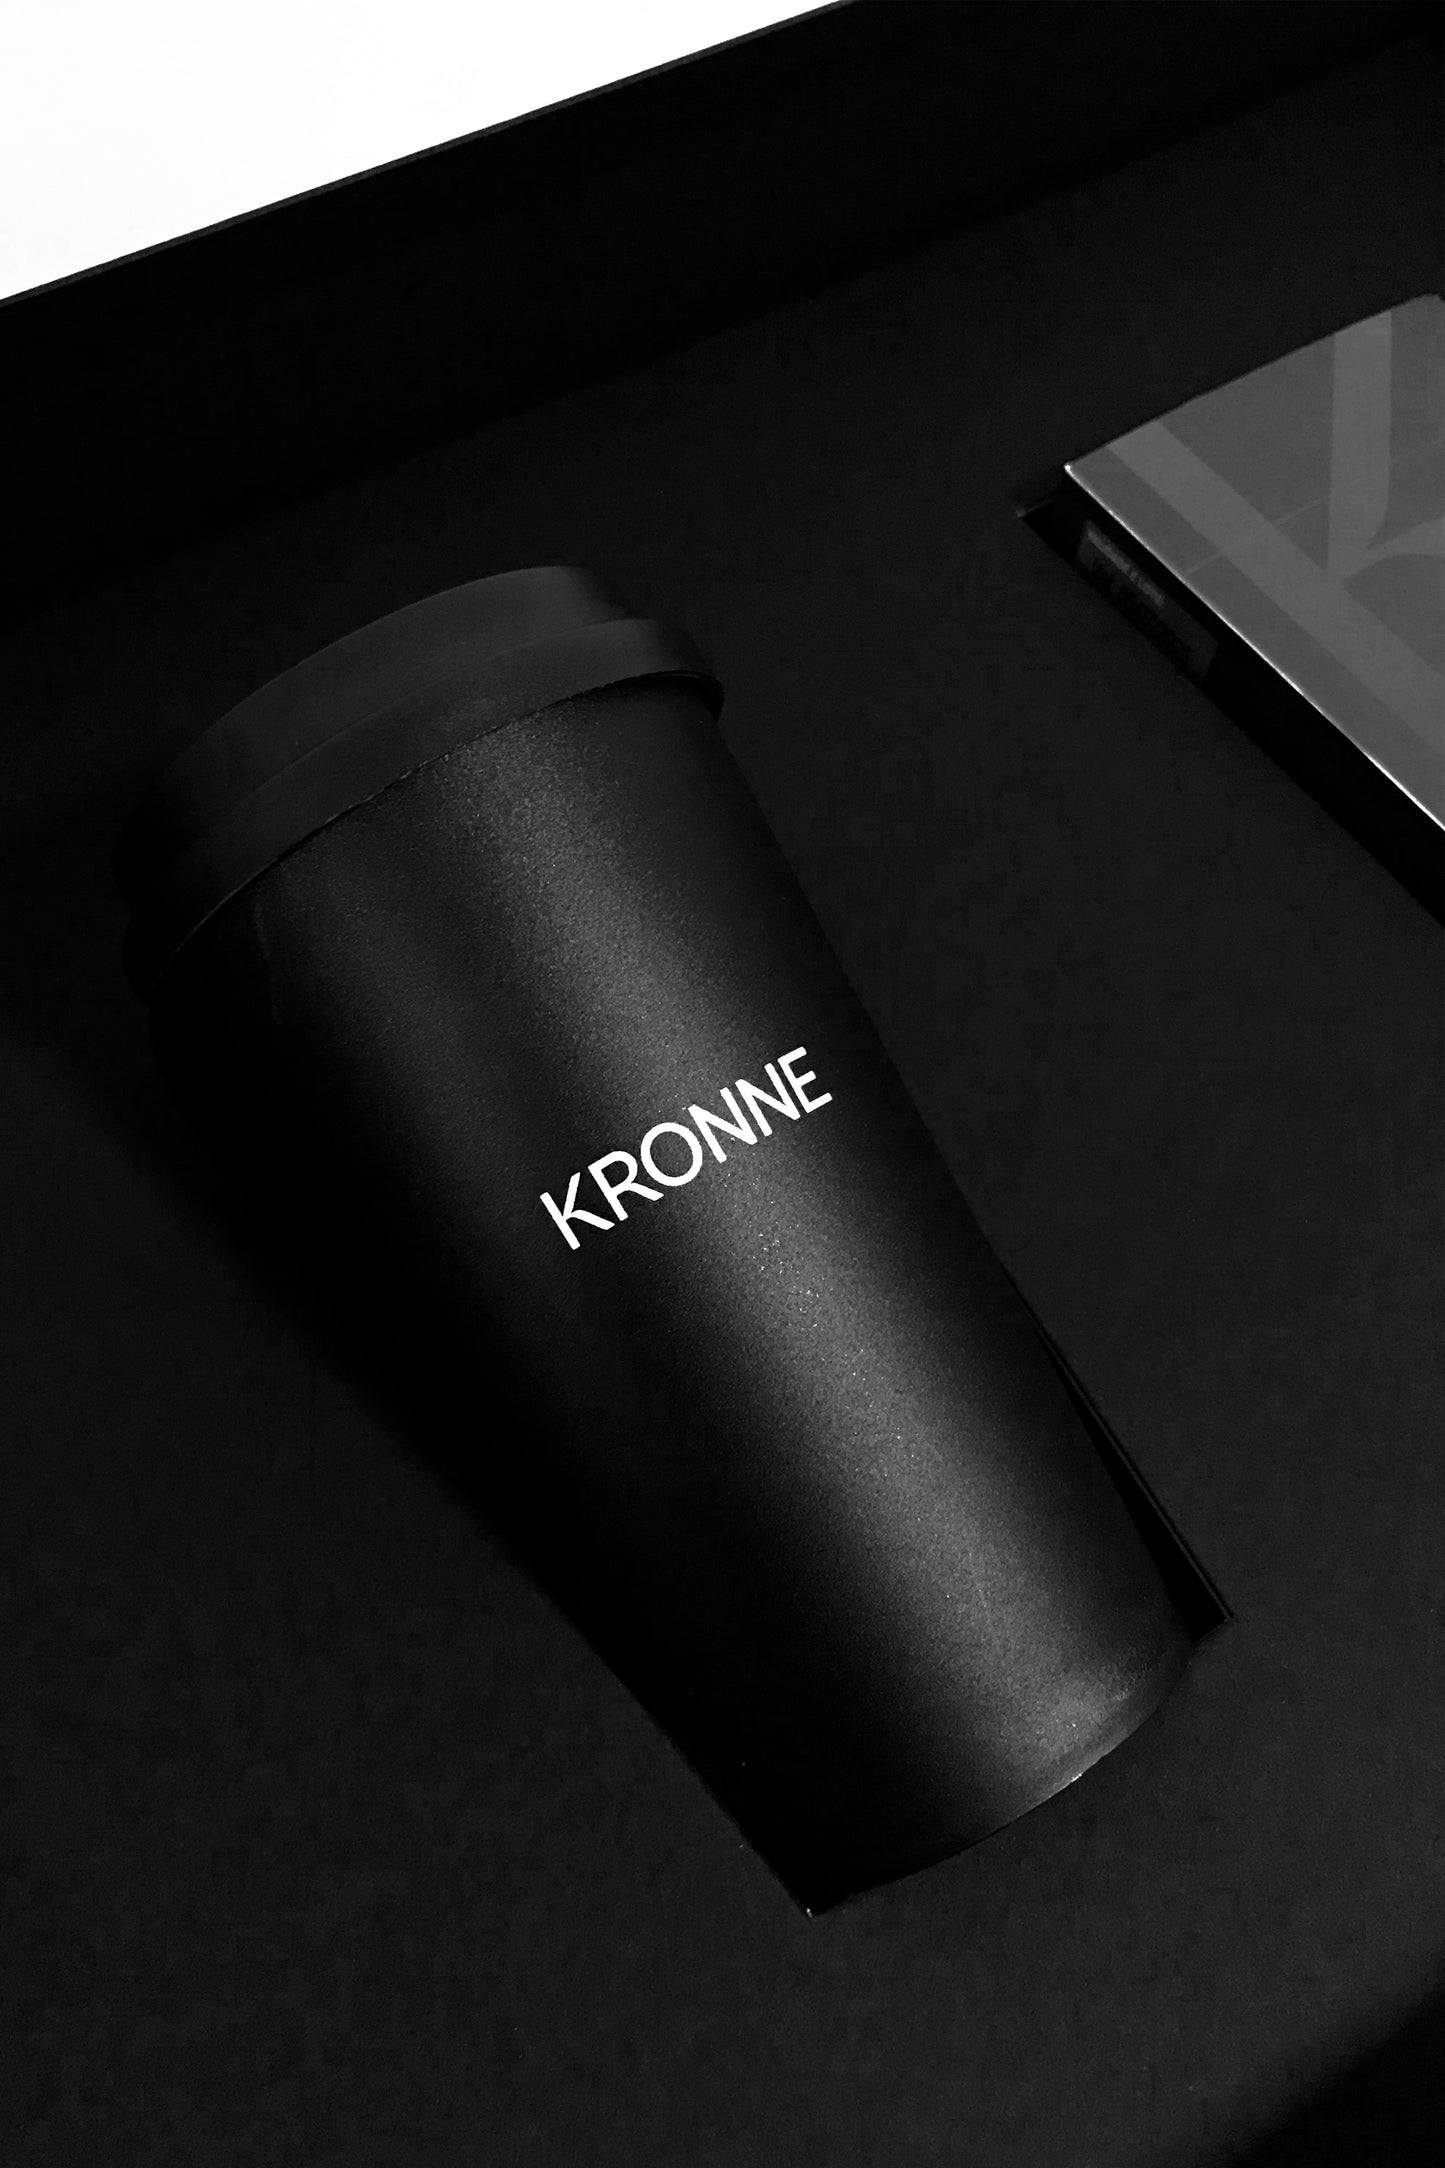 Copo café Kronne